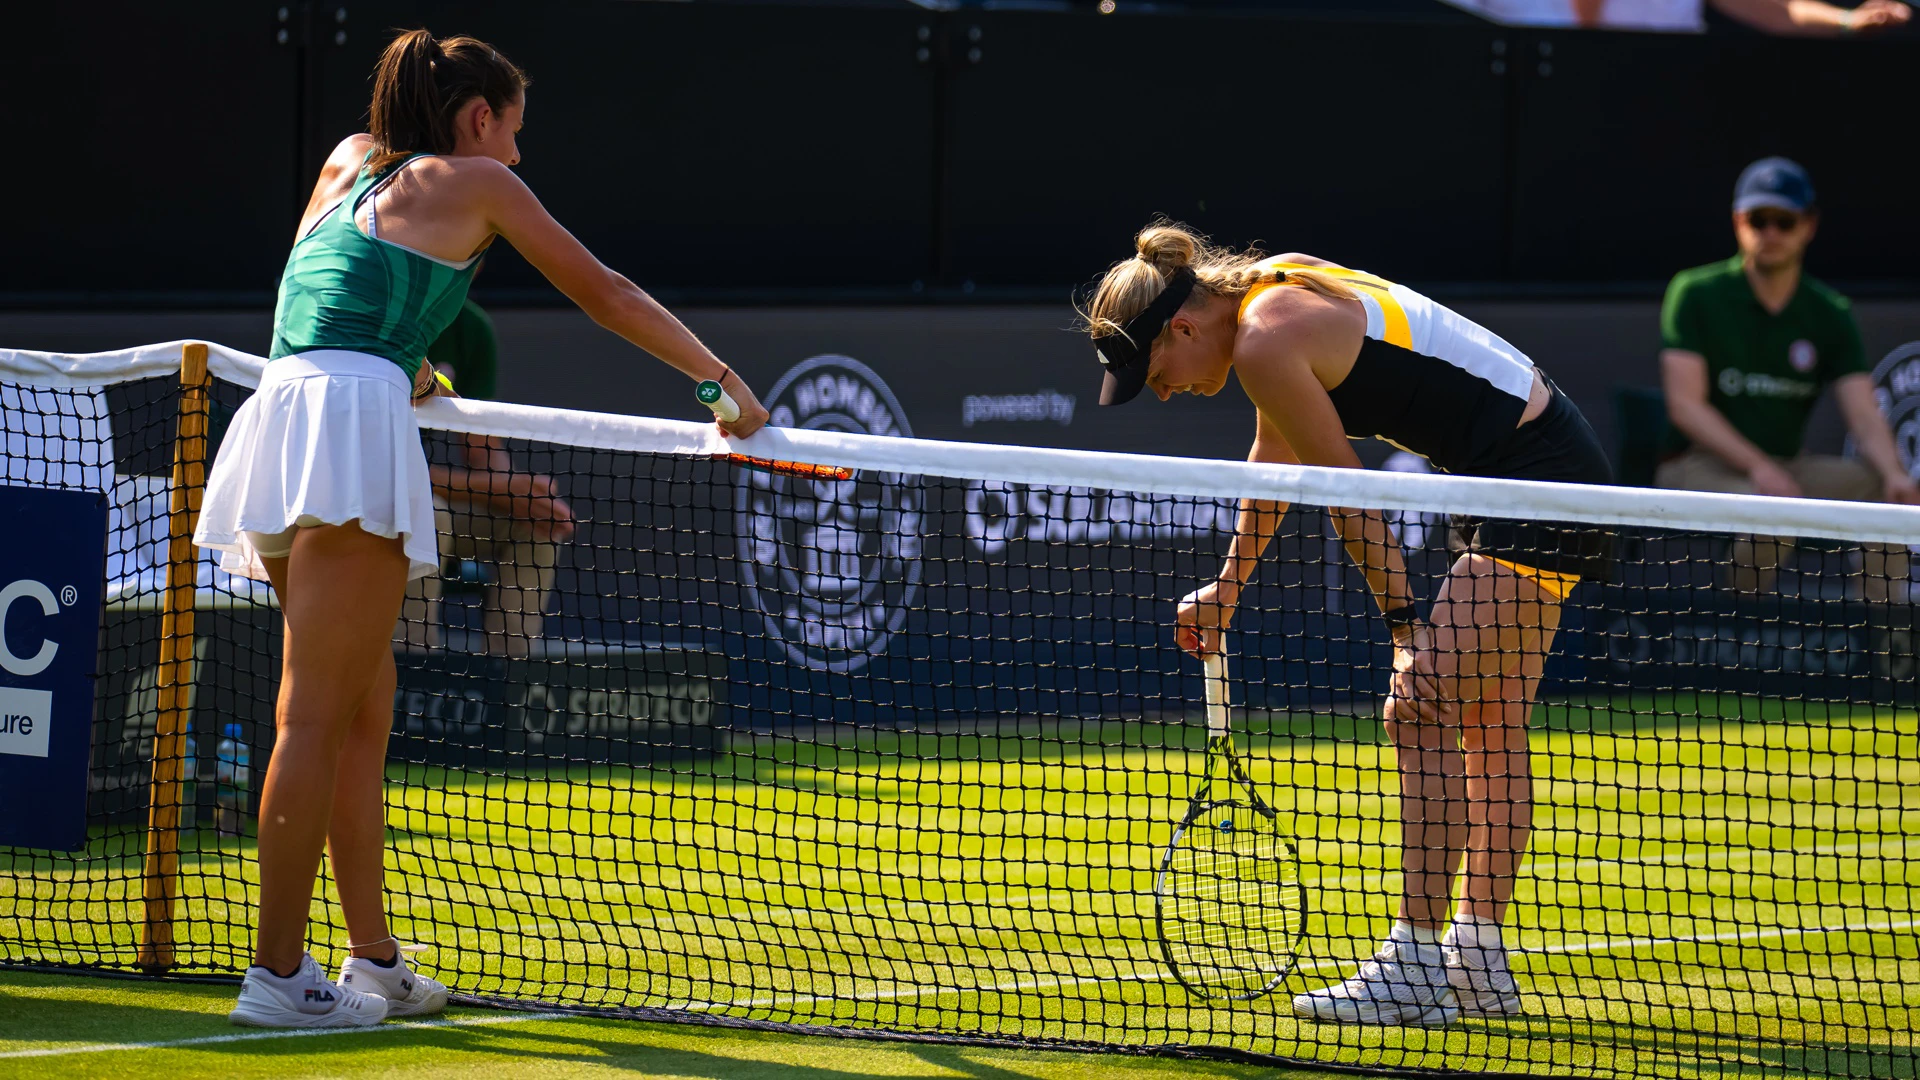 Emma Navarro v Caroline Wozniacki | Homburg Open | QF3 Highlights | WTA 500